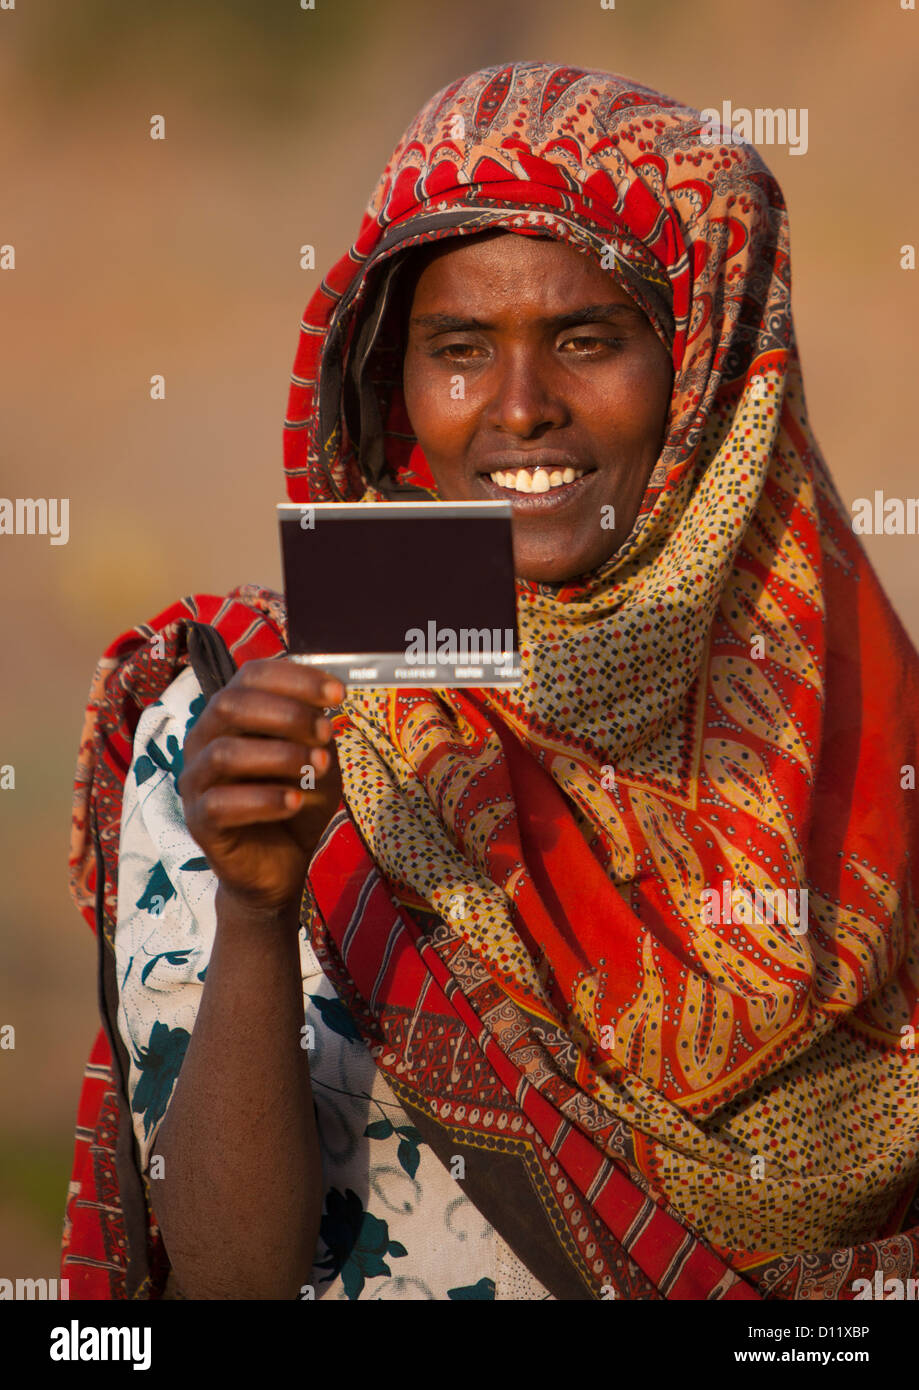 Retrato de una mujer con gran sonrisa viendo a sí misma en la imagen por primera vez, Dire Dawa, Etiopía Foto de stock